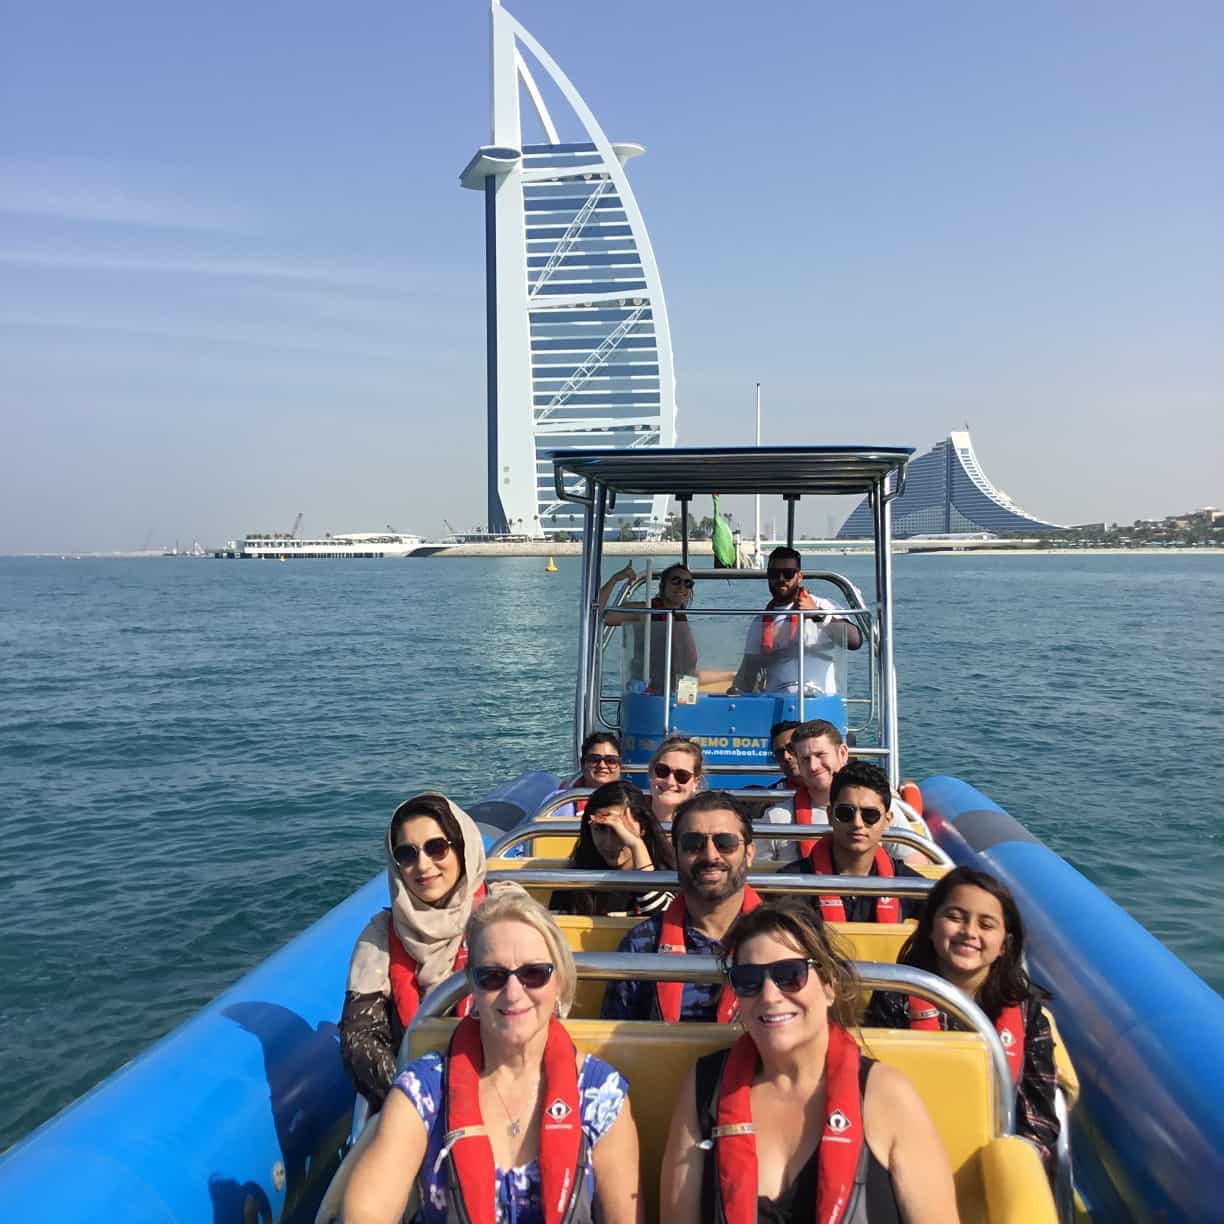 Come on board the fast boat in Dubai